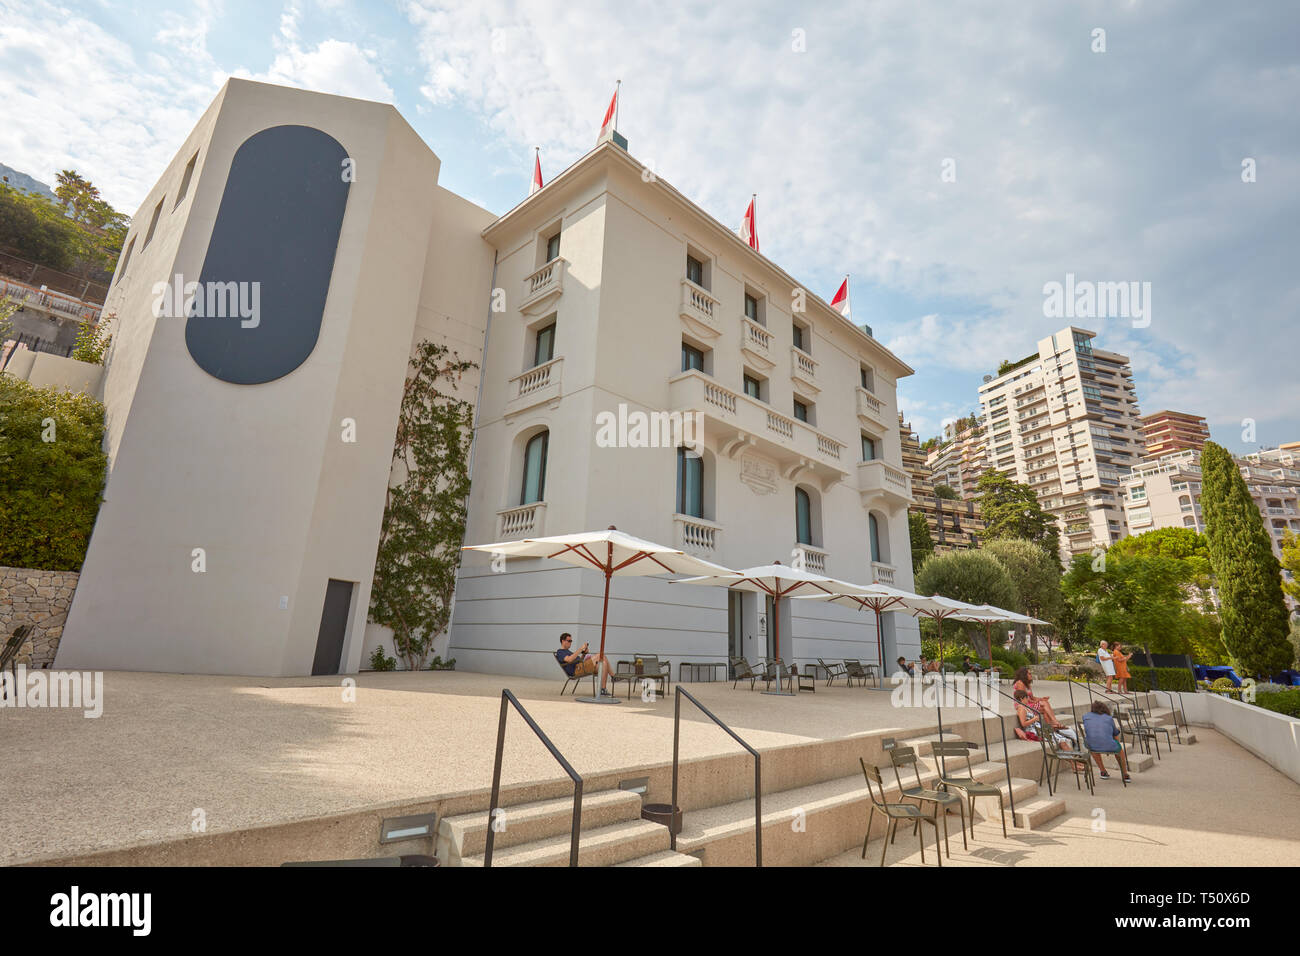 MONTE CARLO, Monaco - Agosto 20, 2016: Villa Paloma museo di arte contemporaneo edificio con persone in una soleggiata giornata estiva in Monte Carlo, Monaco. Foto Stock